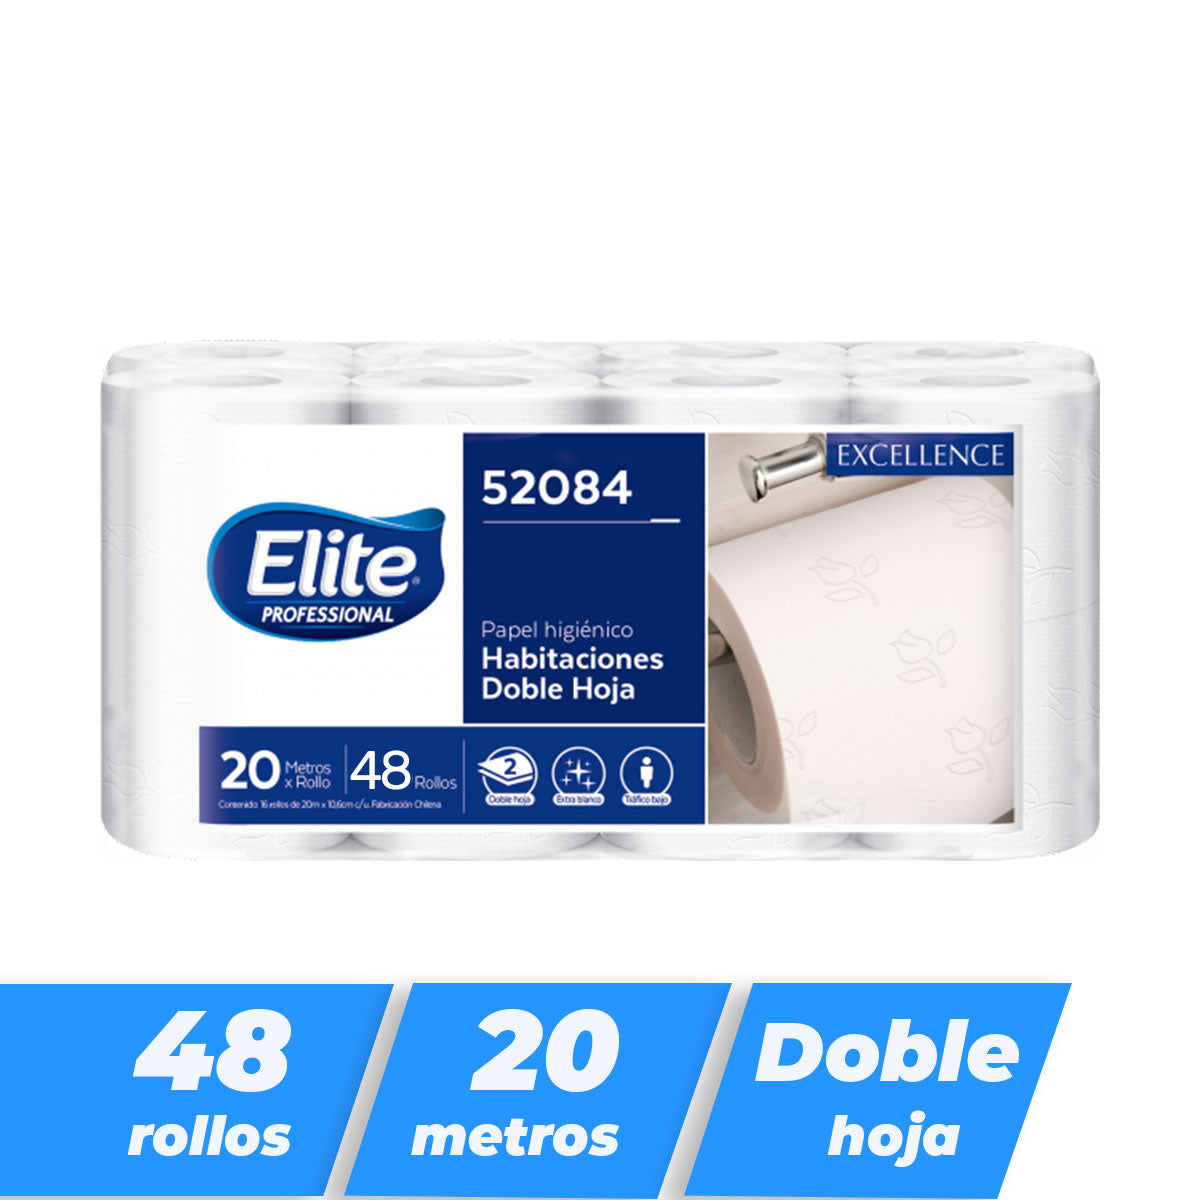 Papel higiénico Elite Excellence Habitaciones Doble hoja 20 metros (48 rollos)